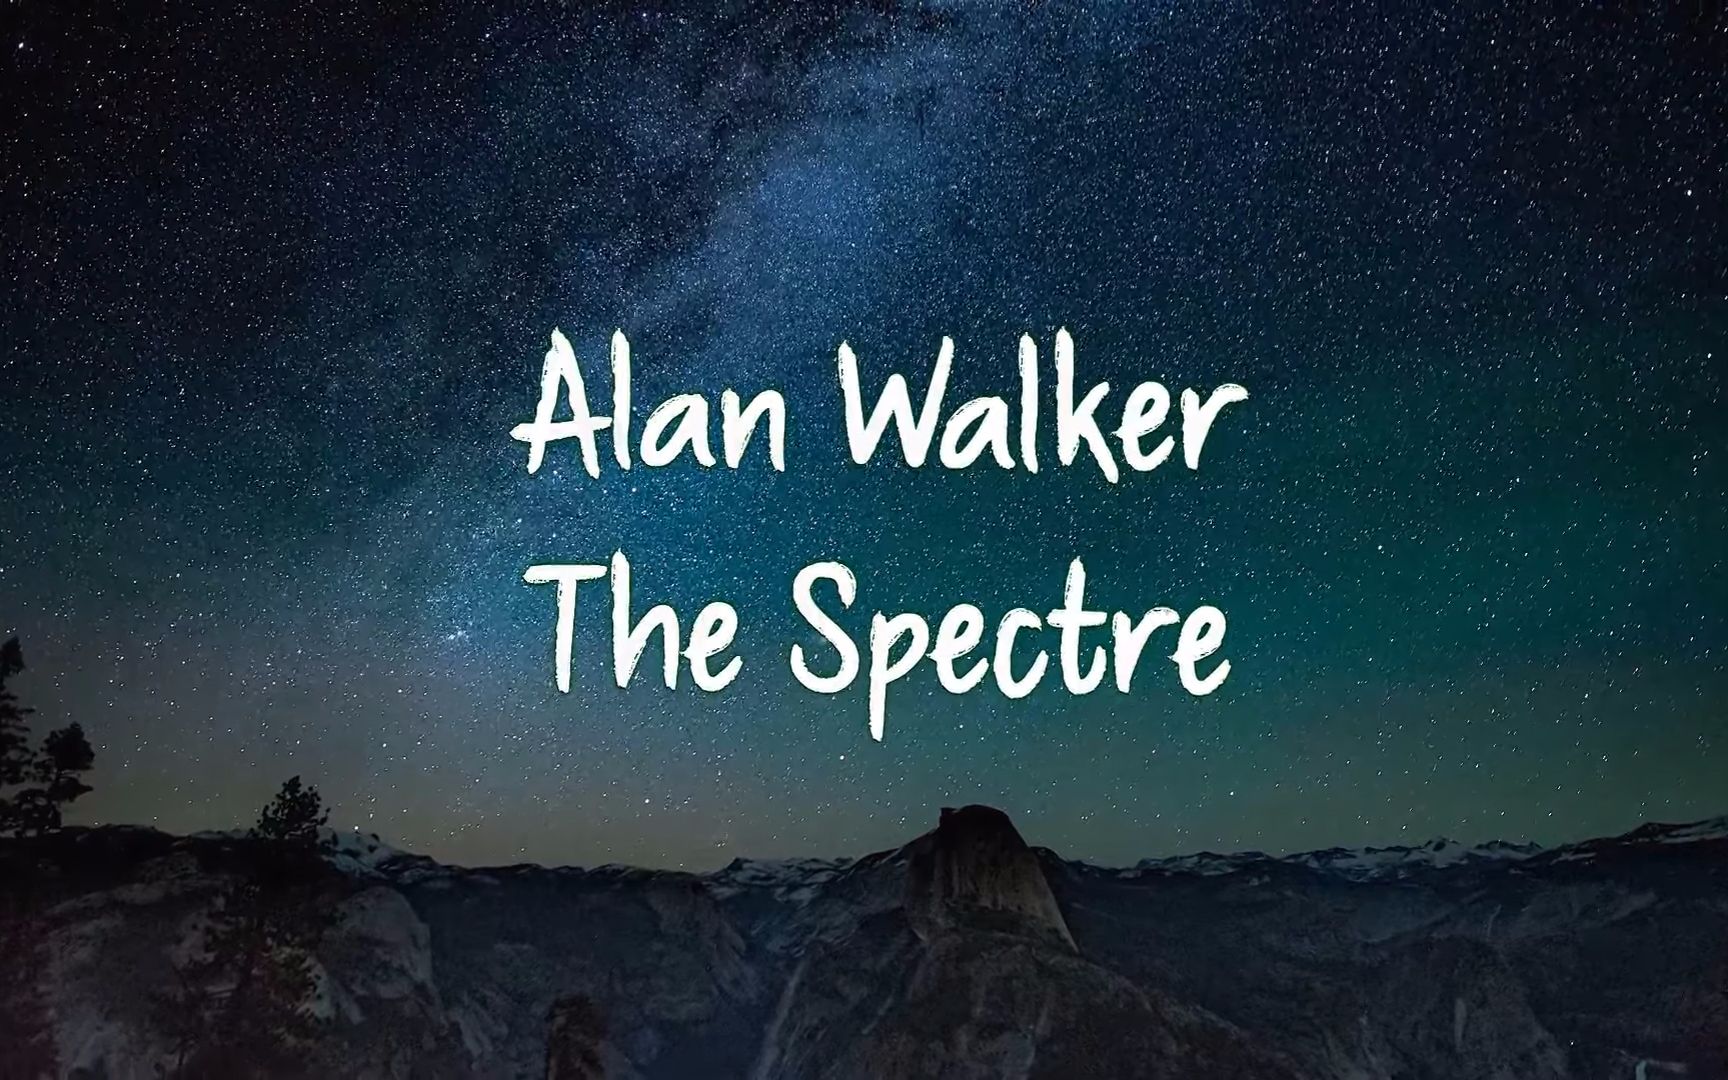 alan walker - the spectre - 钢琴翻奏(附歌词字幕)